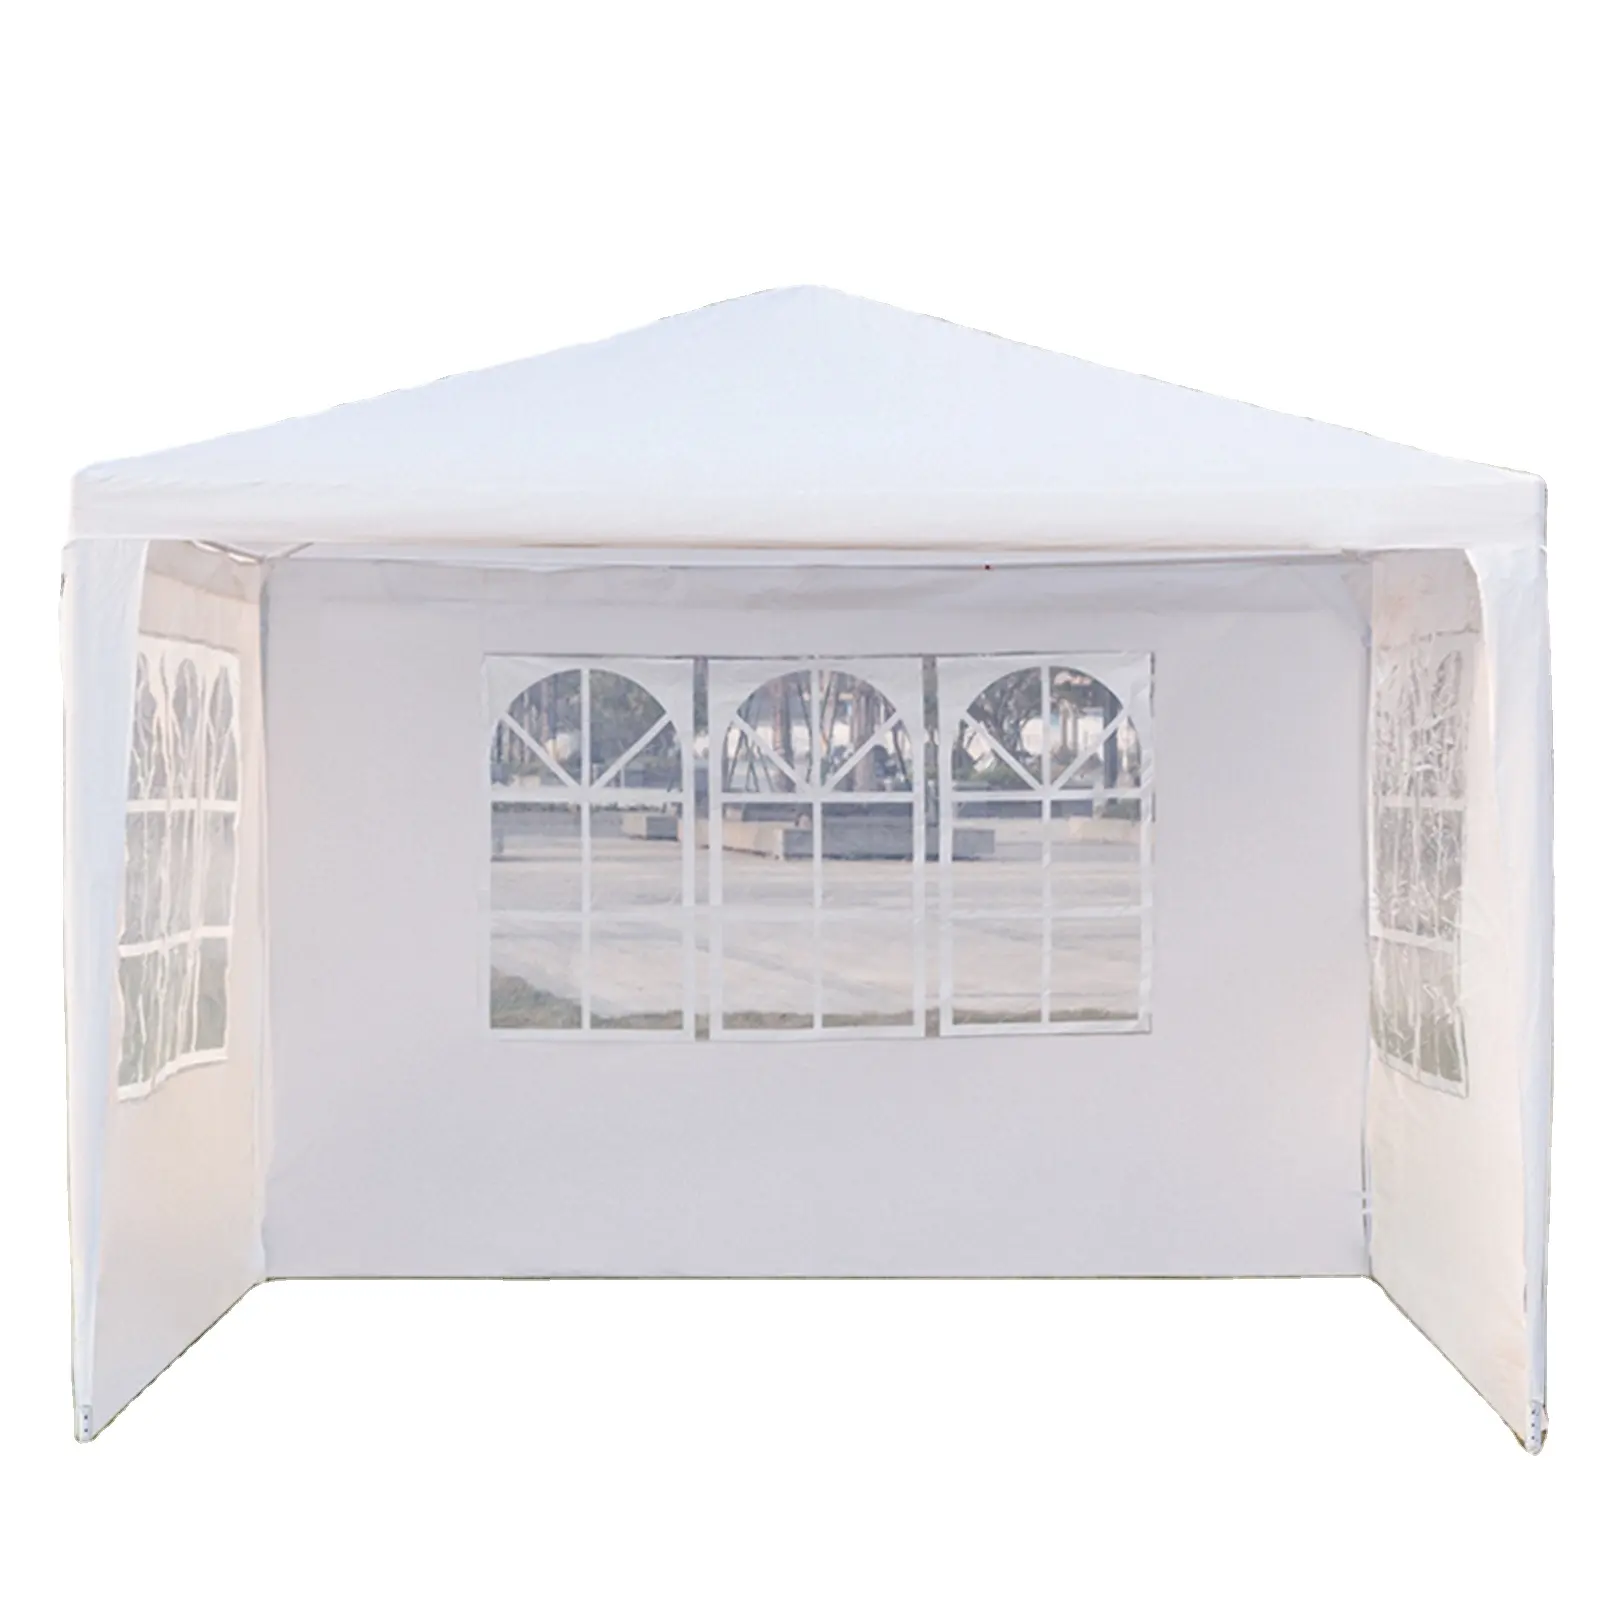 الولايات المتحدة المملكة المتحدة الاتحاد الأوروبي مستودع للماء المحمولة شرفة 3x 3 خيمة مظلة carpa plegable خيام للأحداث في الهواء الطلق حزب حديقة الخيام